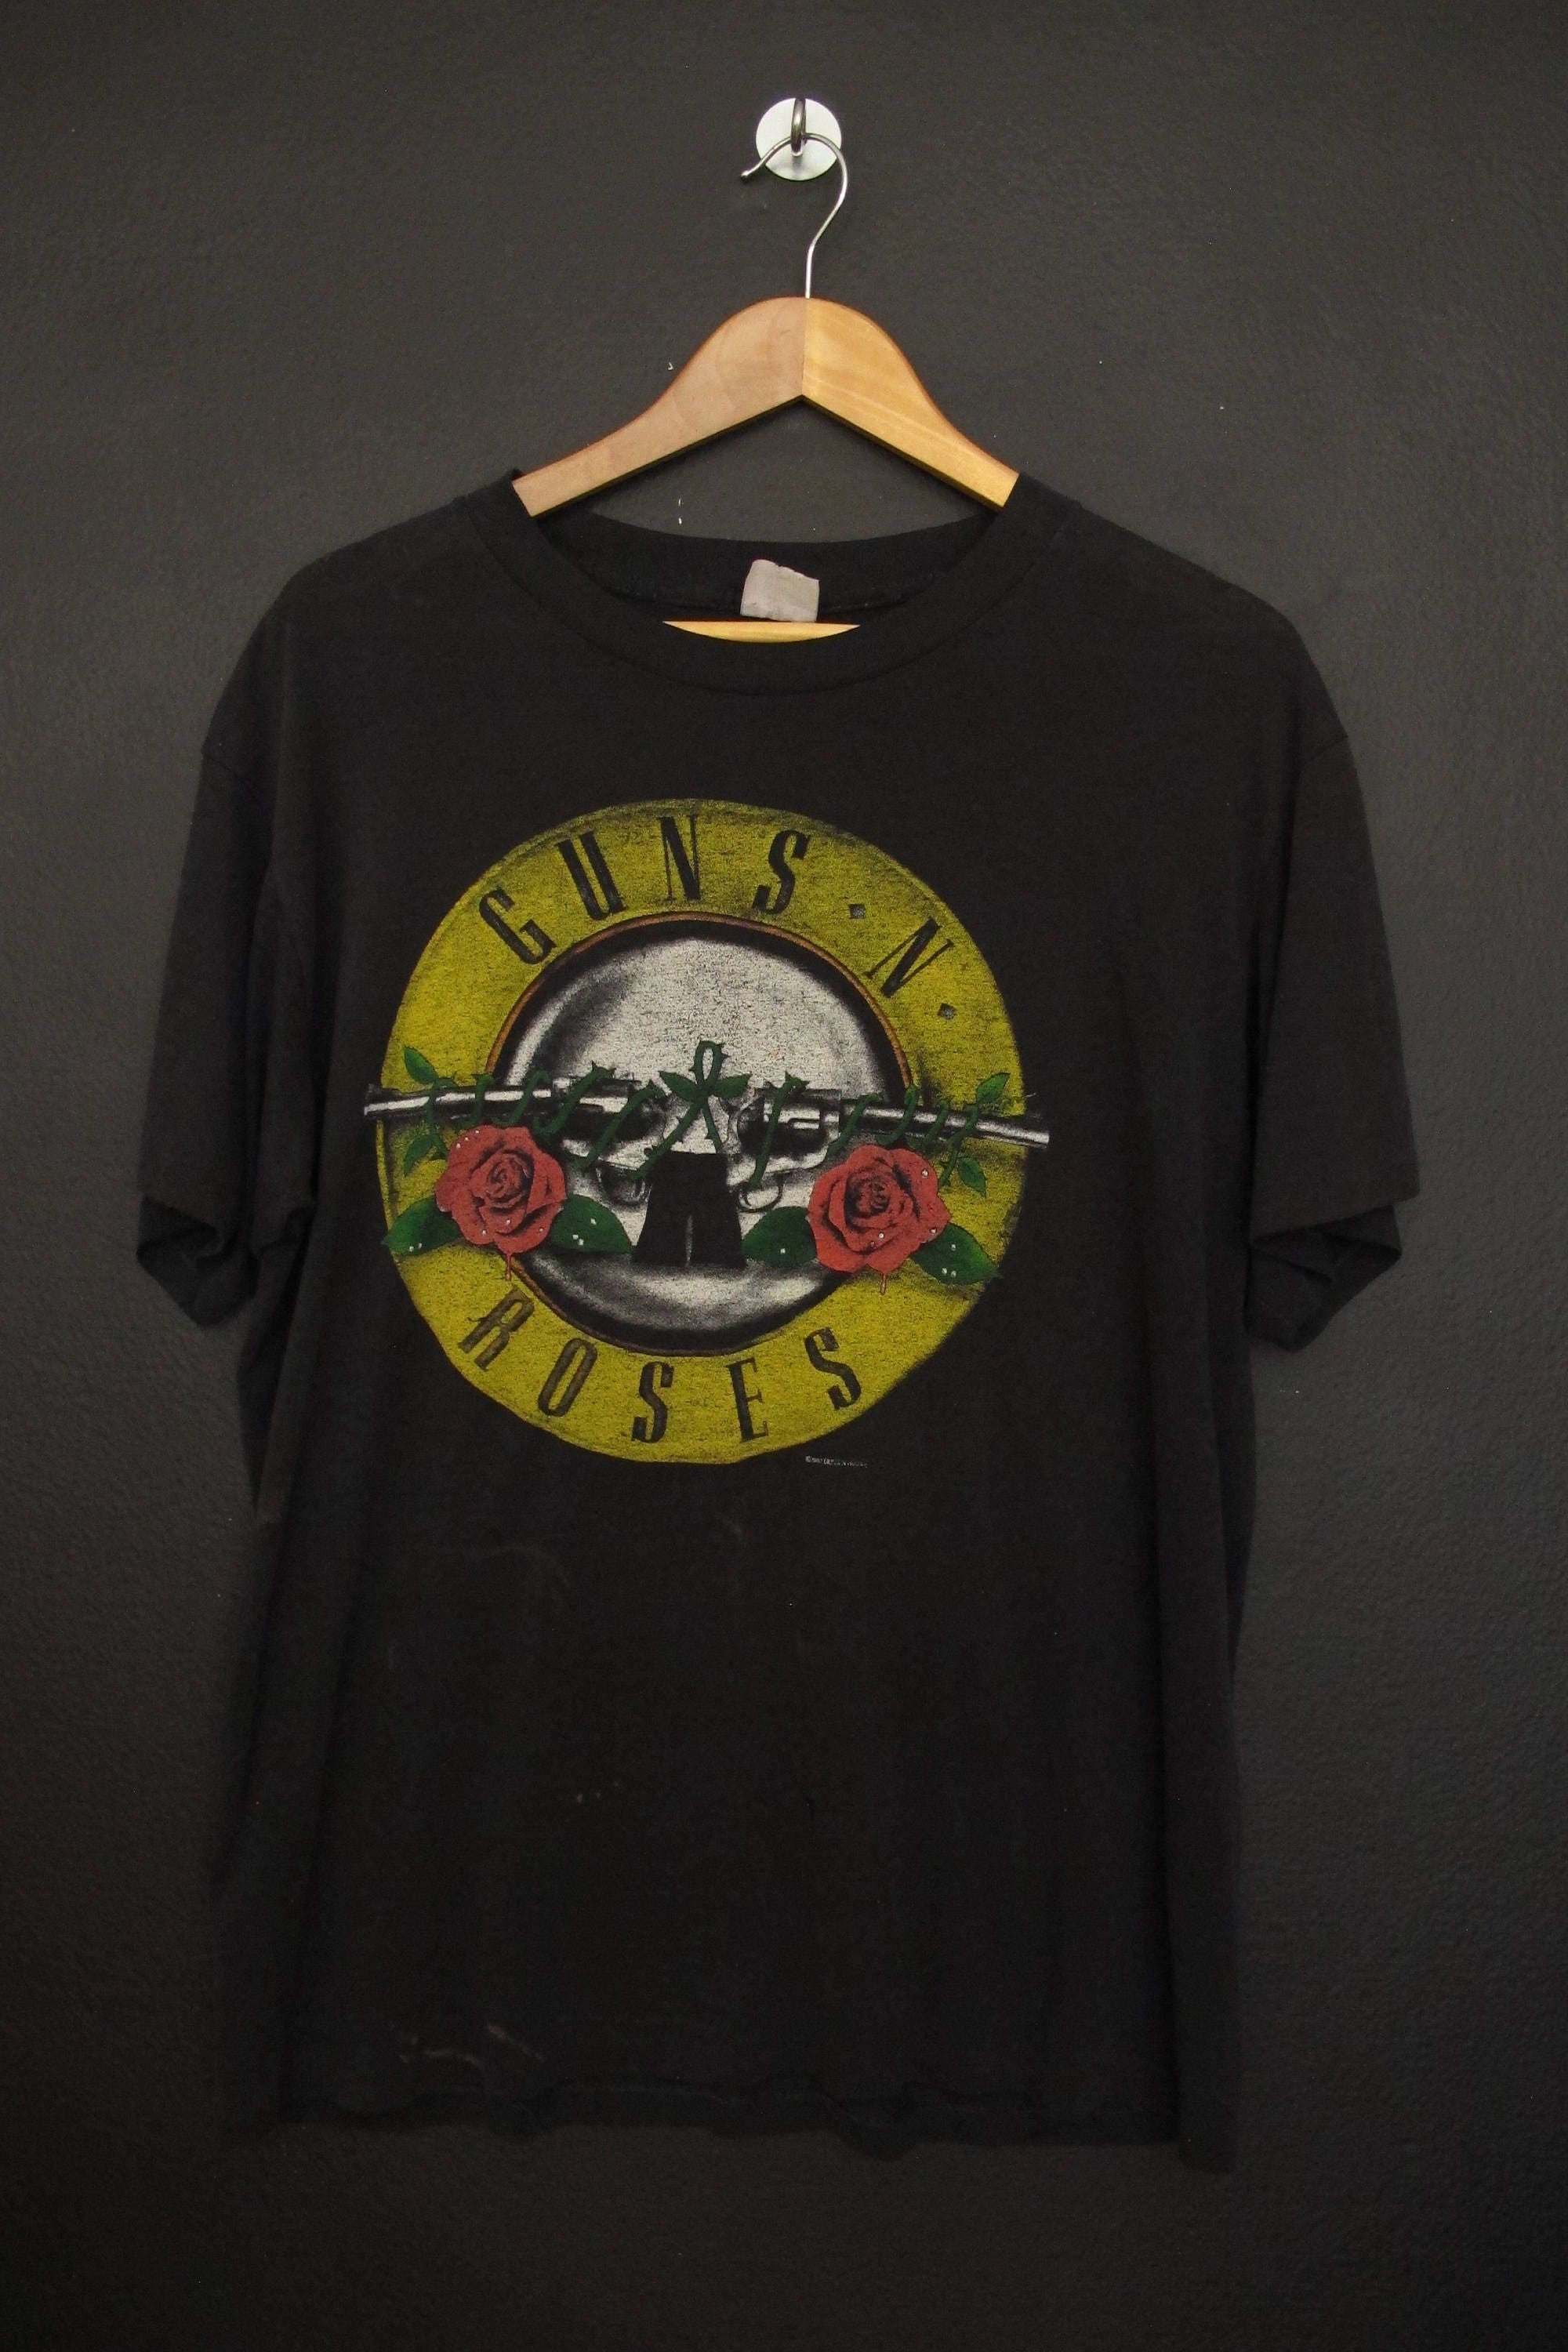 Guns N Roses Was Here 1987 vintage Tshirt